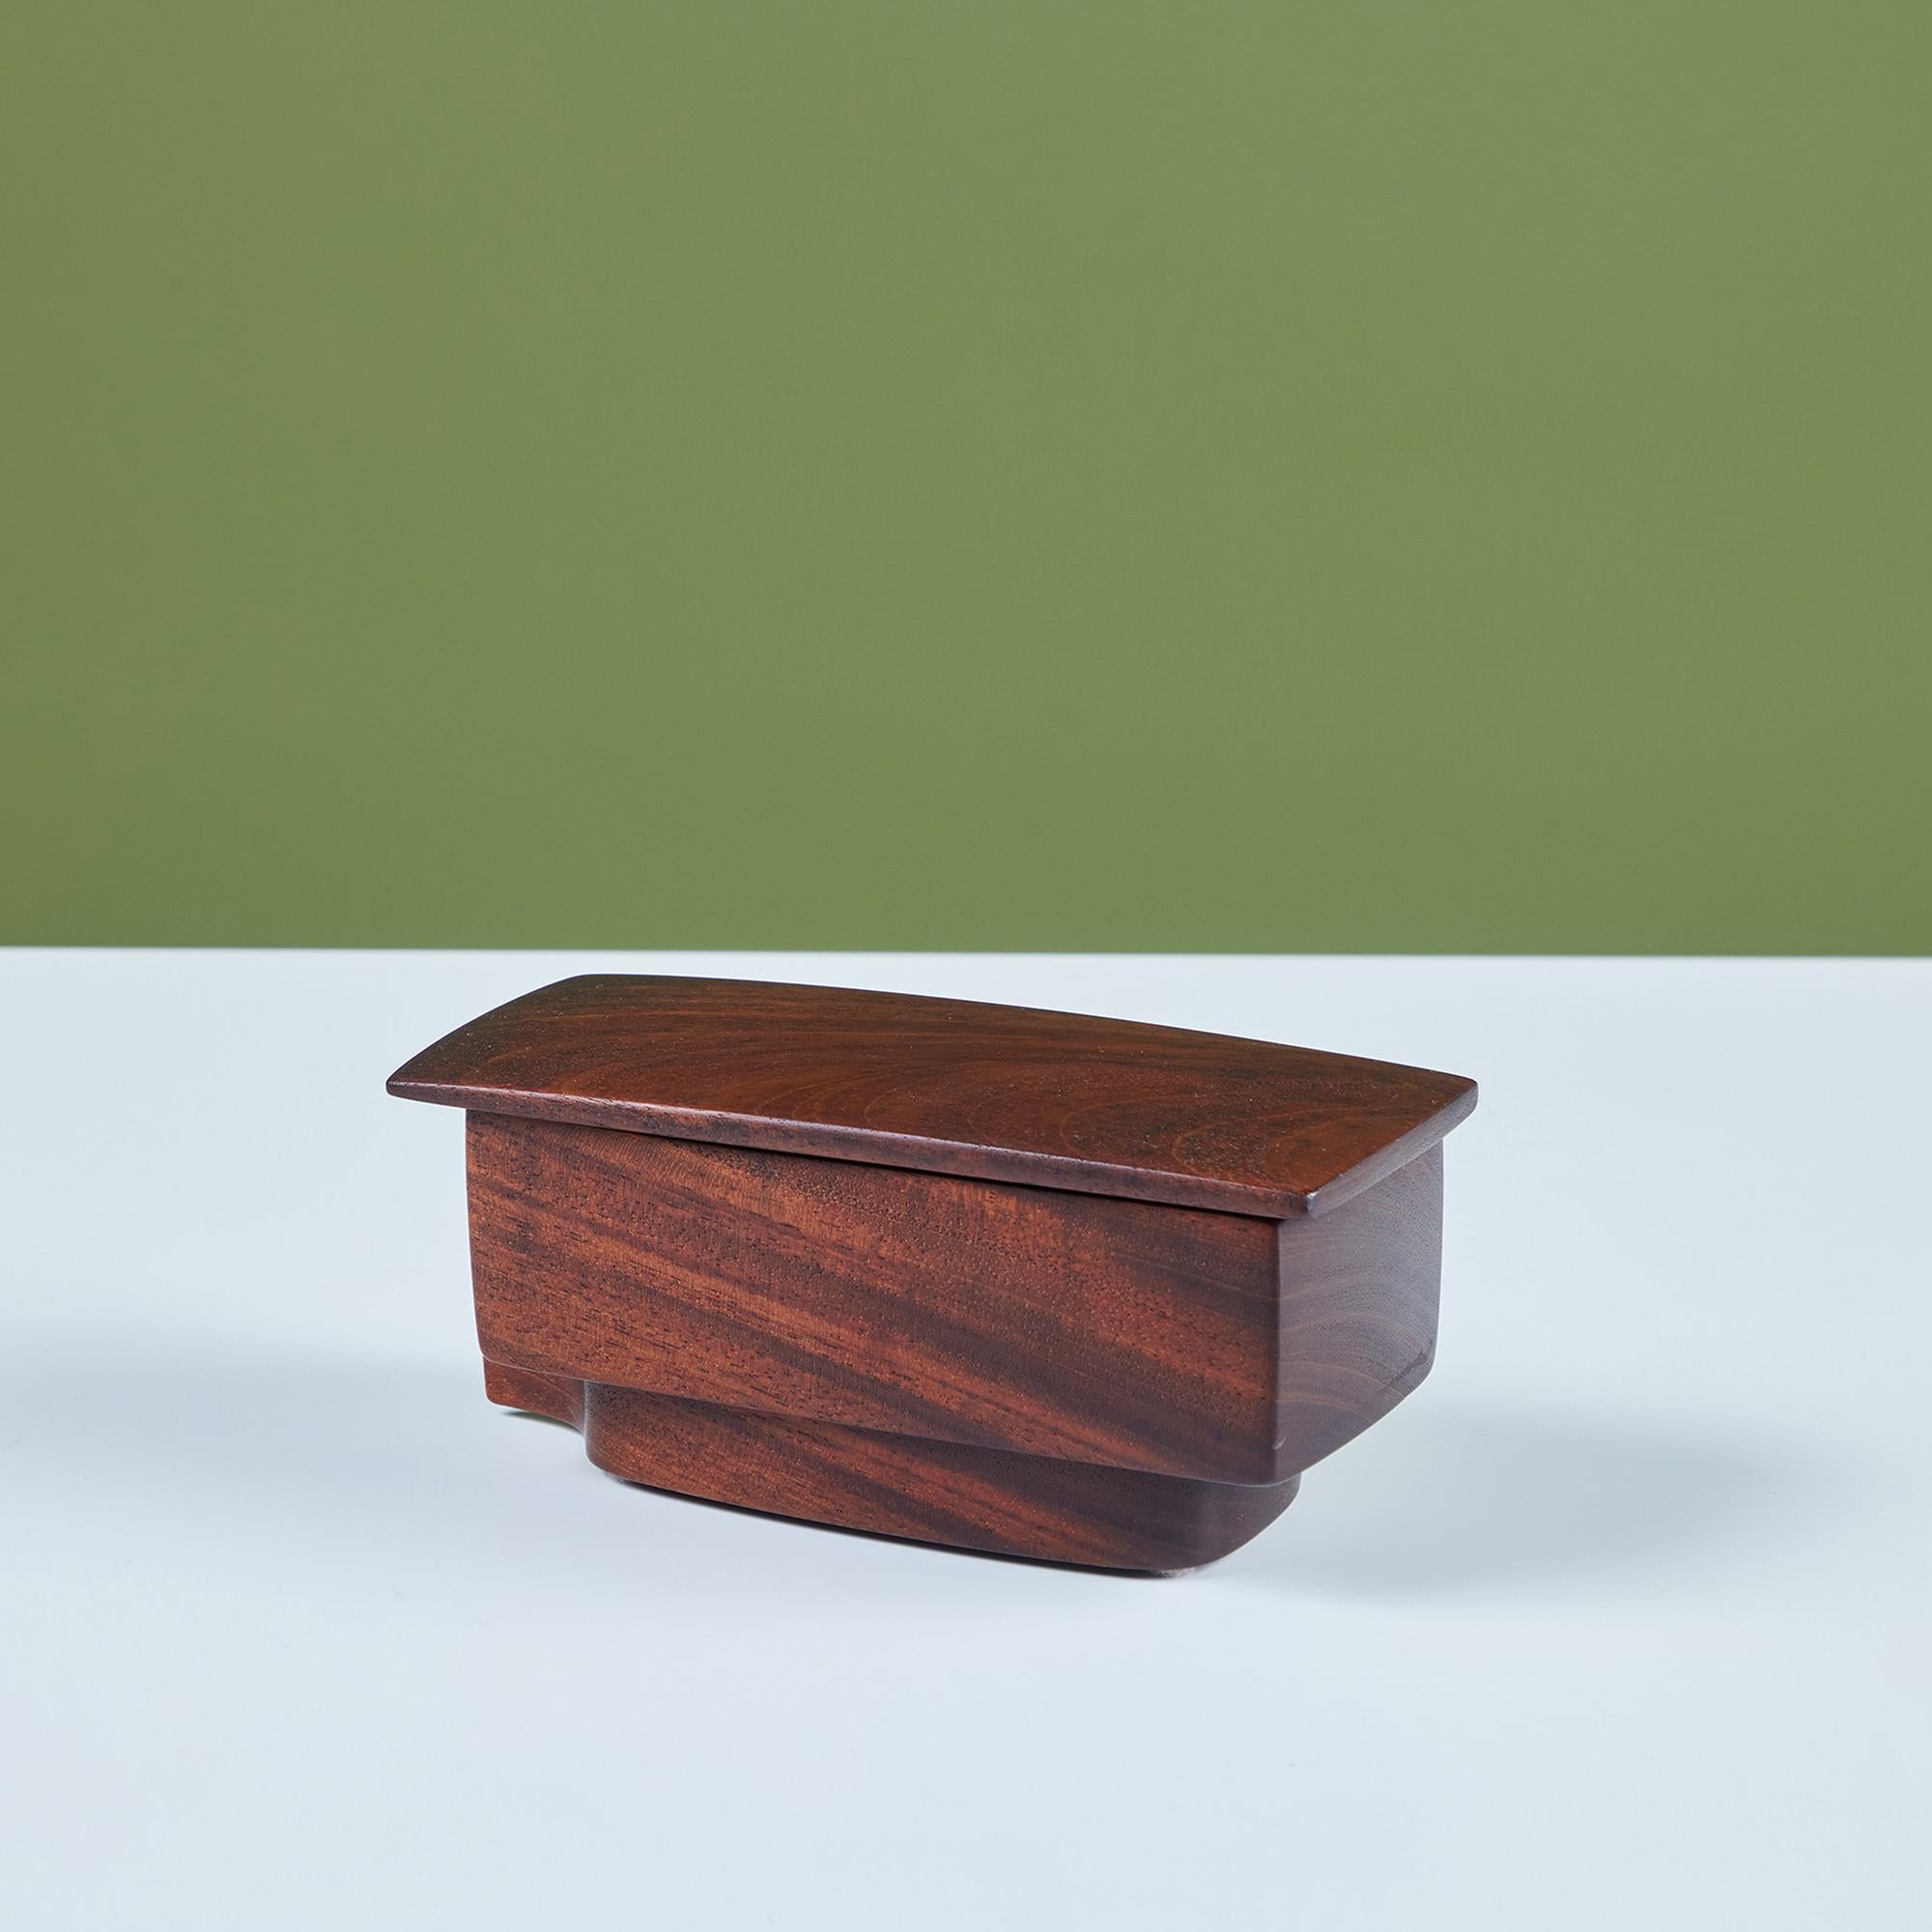 Boîte rectangulaire en noyer, sculptée à la main. La boîte présente un intérieur en bois joliment festonné à la main avec une base encastrée qui offre un détail de rainure amusant. Signé par l'artiste - 